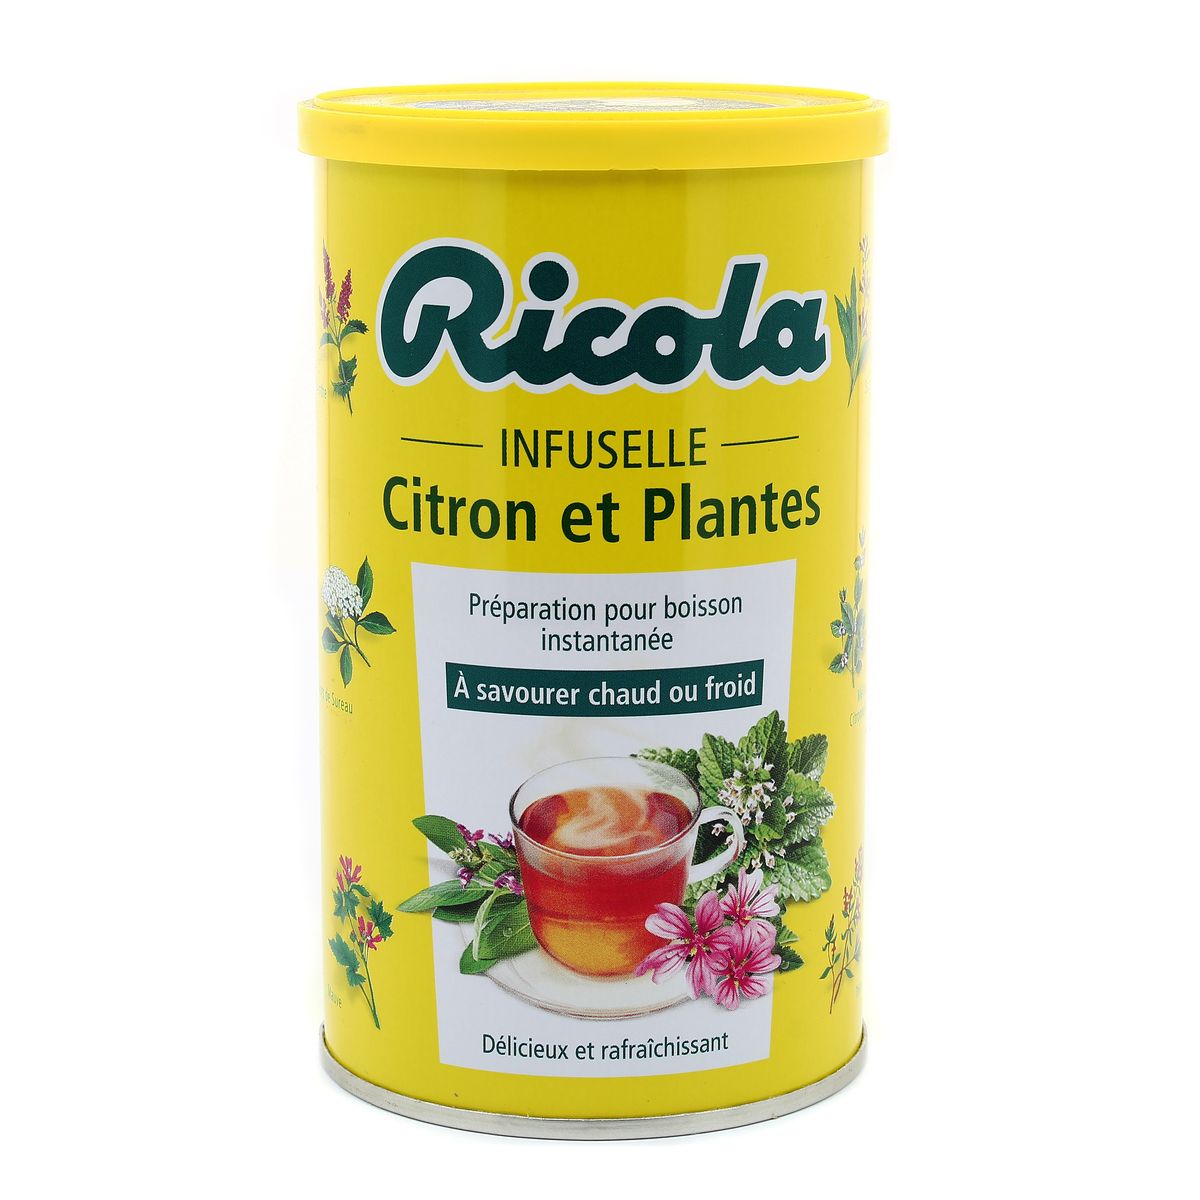 Ricola - Infuselle Citron et Plantes - Boîte de 200g